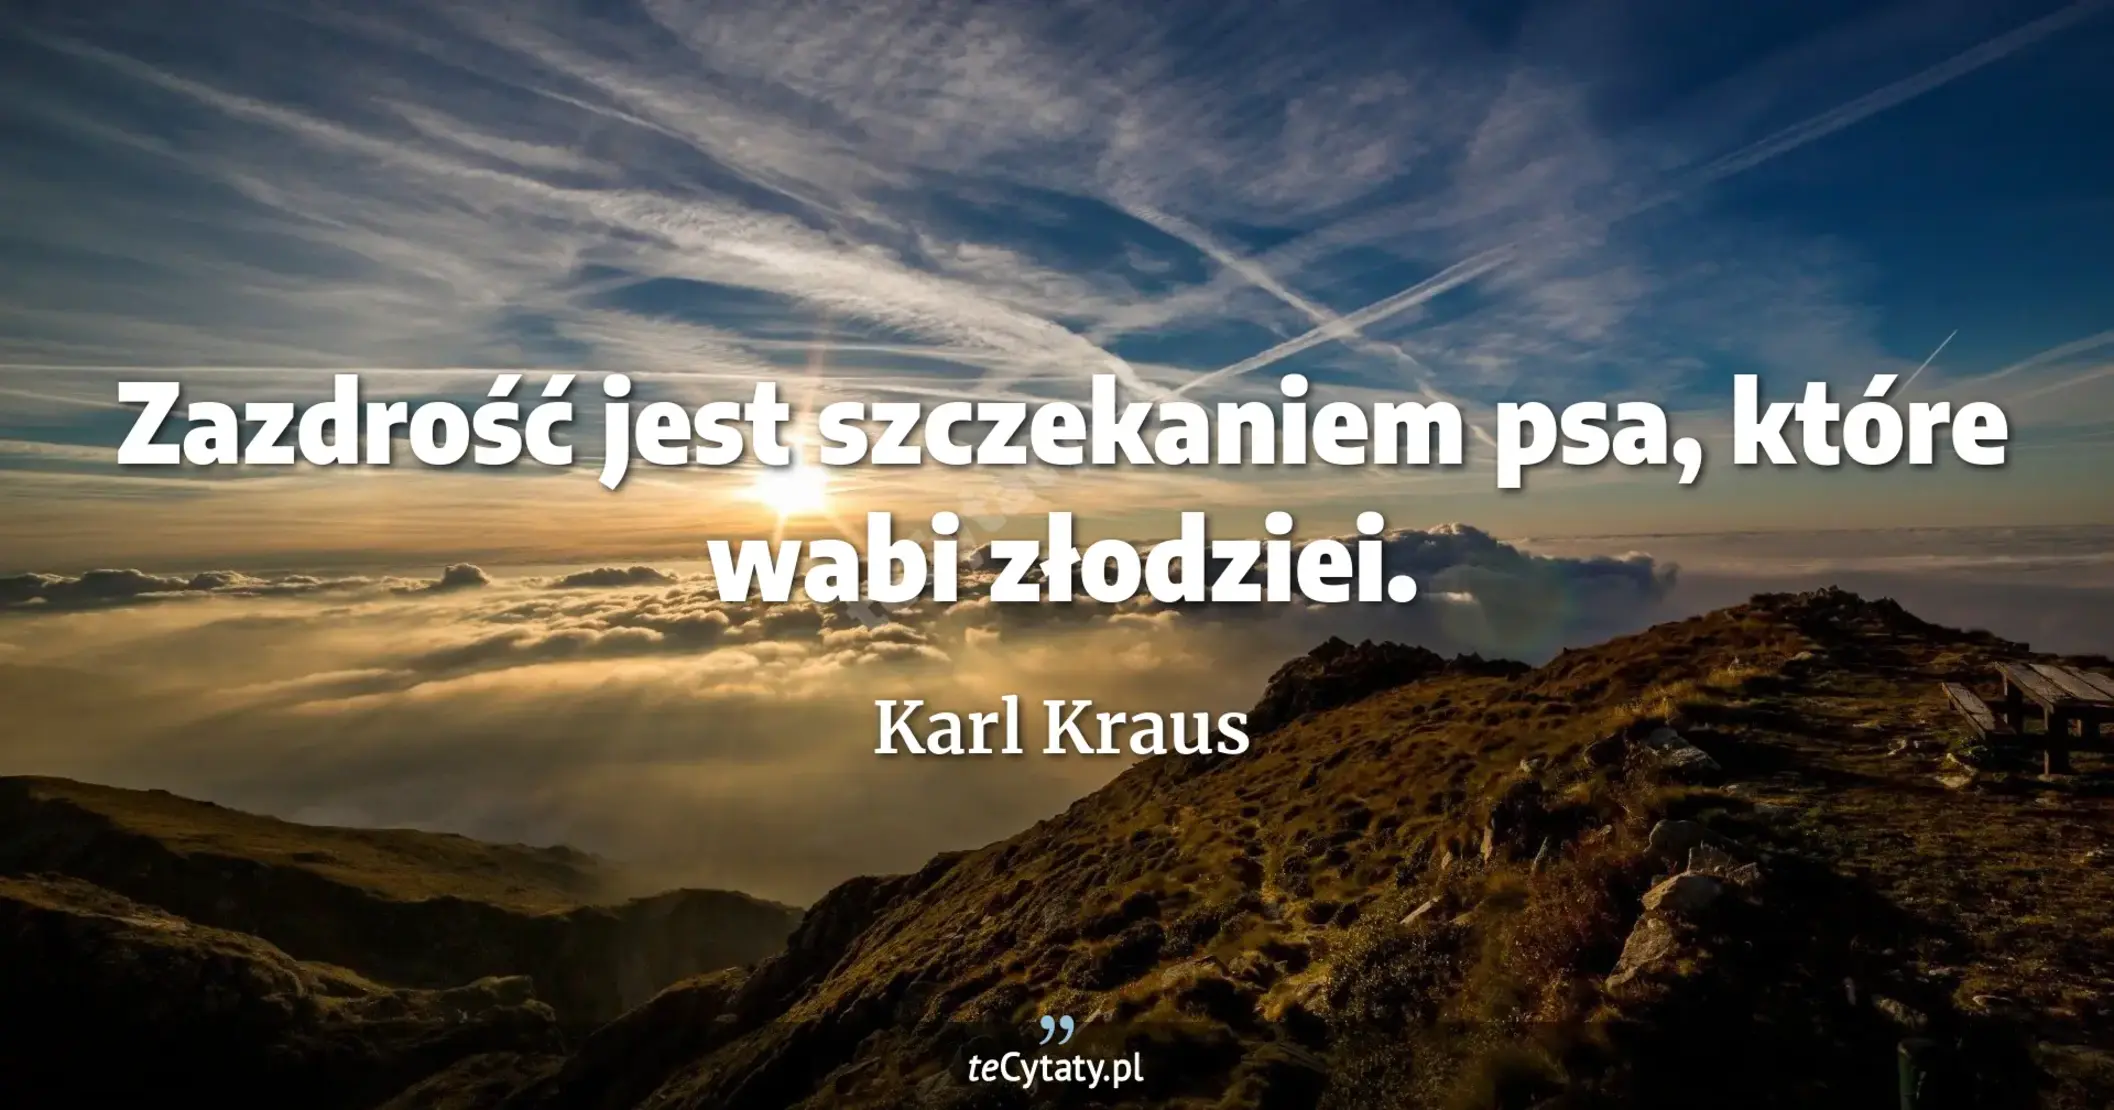 Zazdrość jest szczekaniem psa, które wabi złodziei. - Karl Kraus